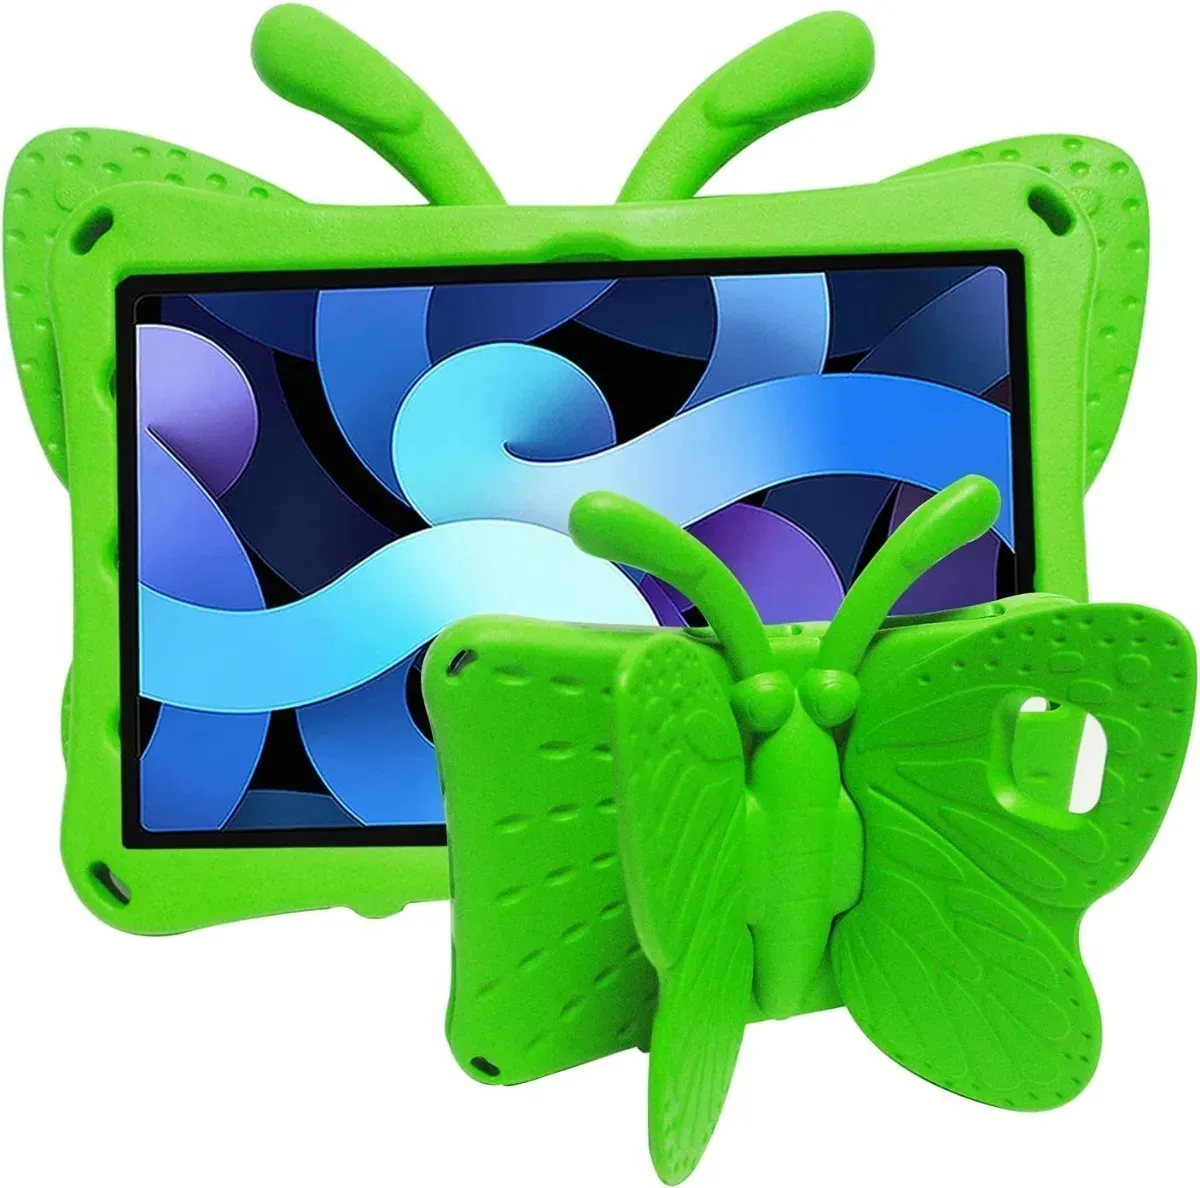 Funda de Goma con Diseño Mariposa para Tablet Huawei T10 Verde